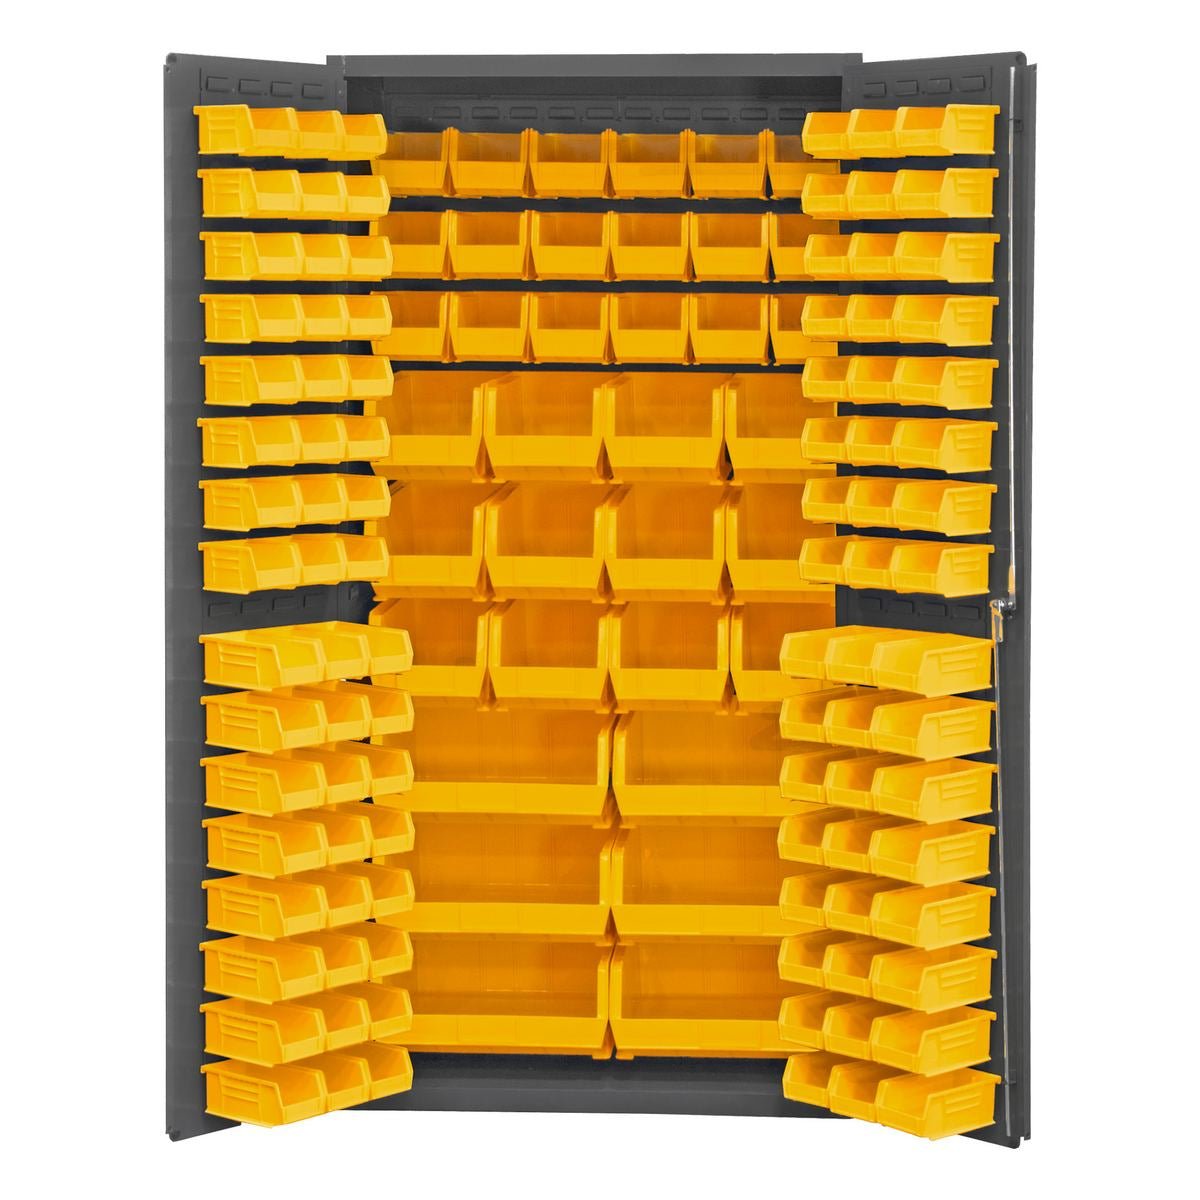 Vestil VSC-3501-102 Storage Cabinet 102 Bins 36x72